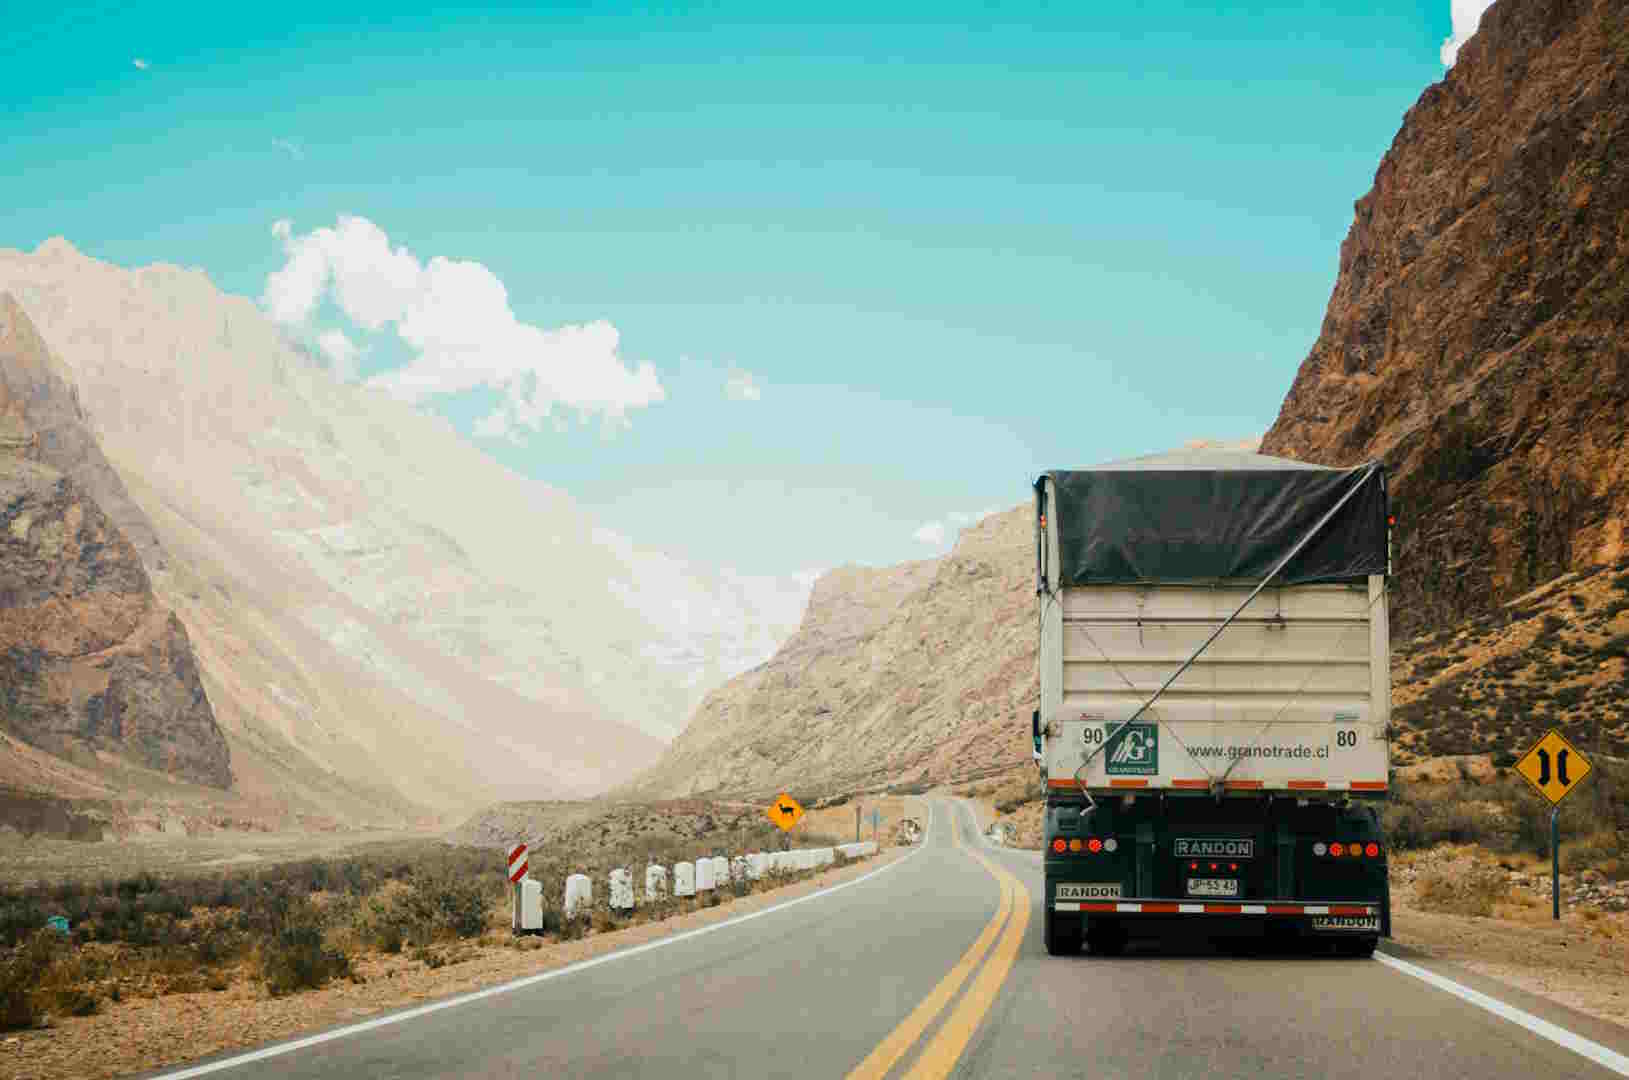 Controlli sui camion: dal 13 al 19 maggio verifiche aumentate per l’operazione RoadPol Truck & Bus